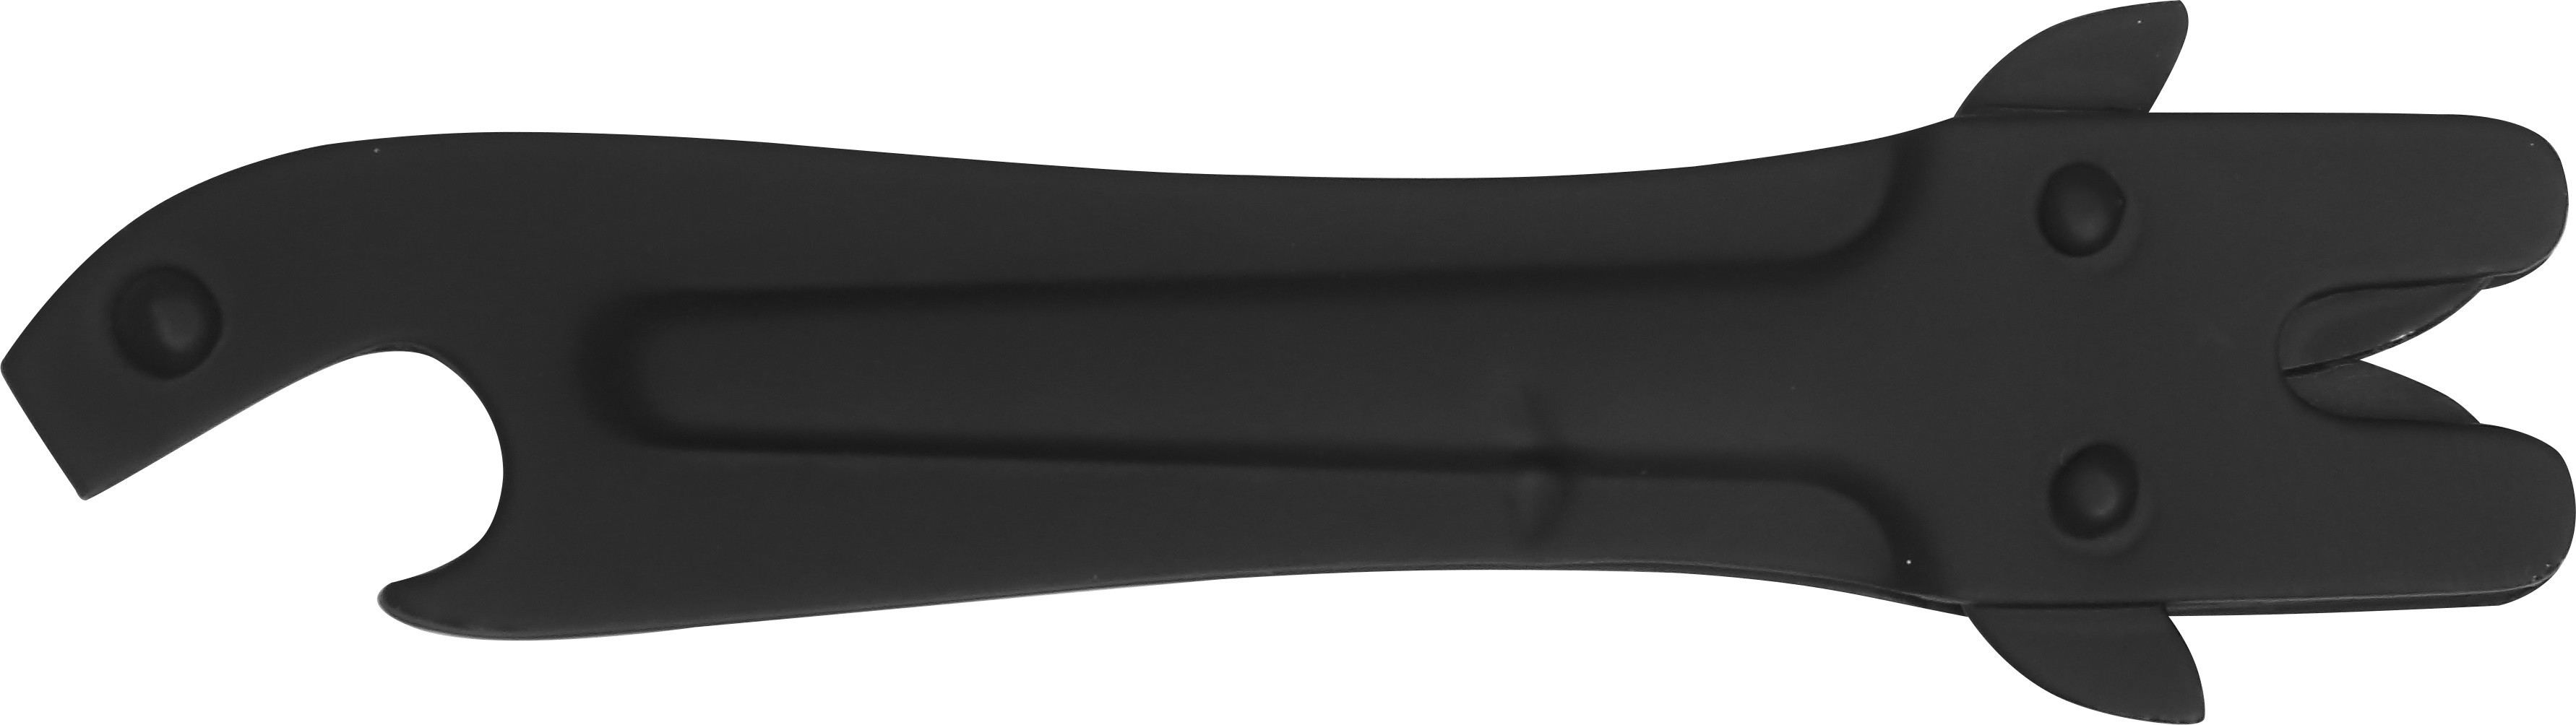 Affûteur pk 11 cm - noir